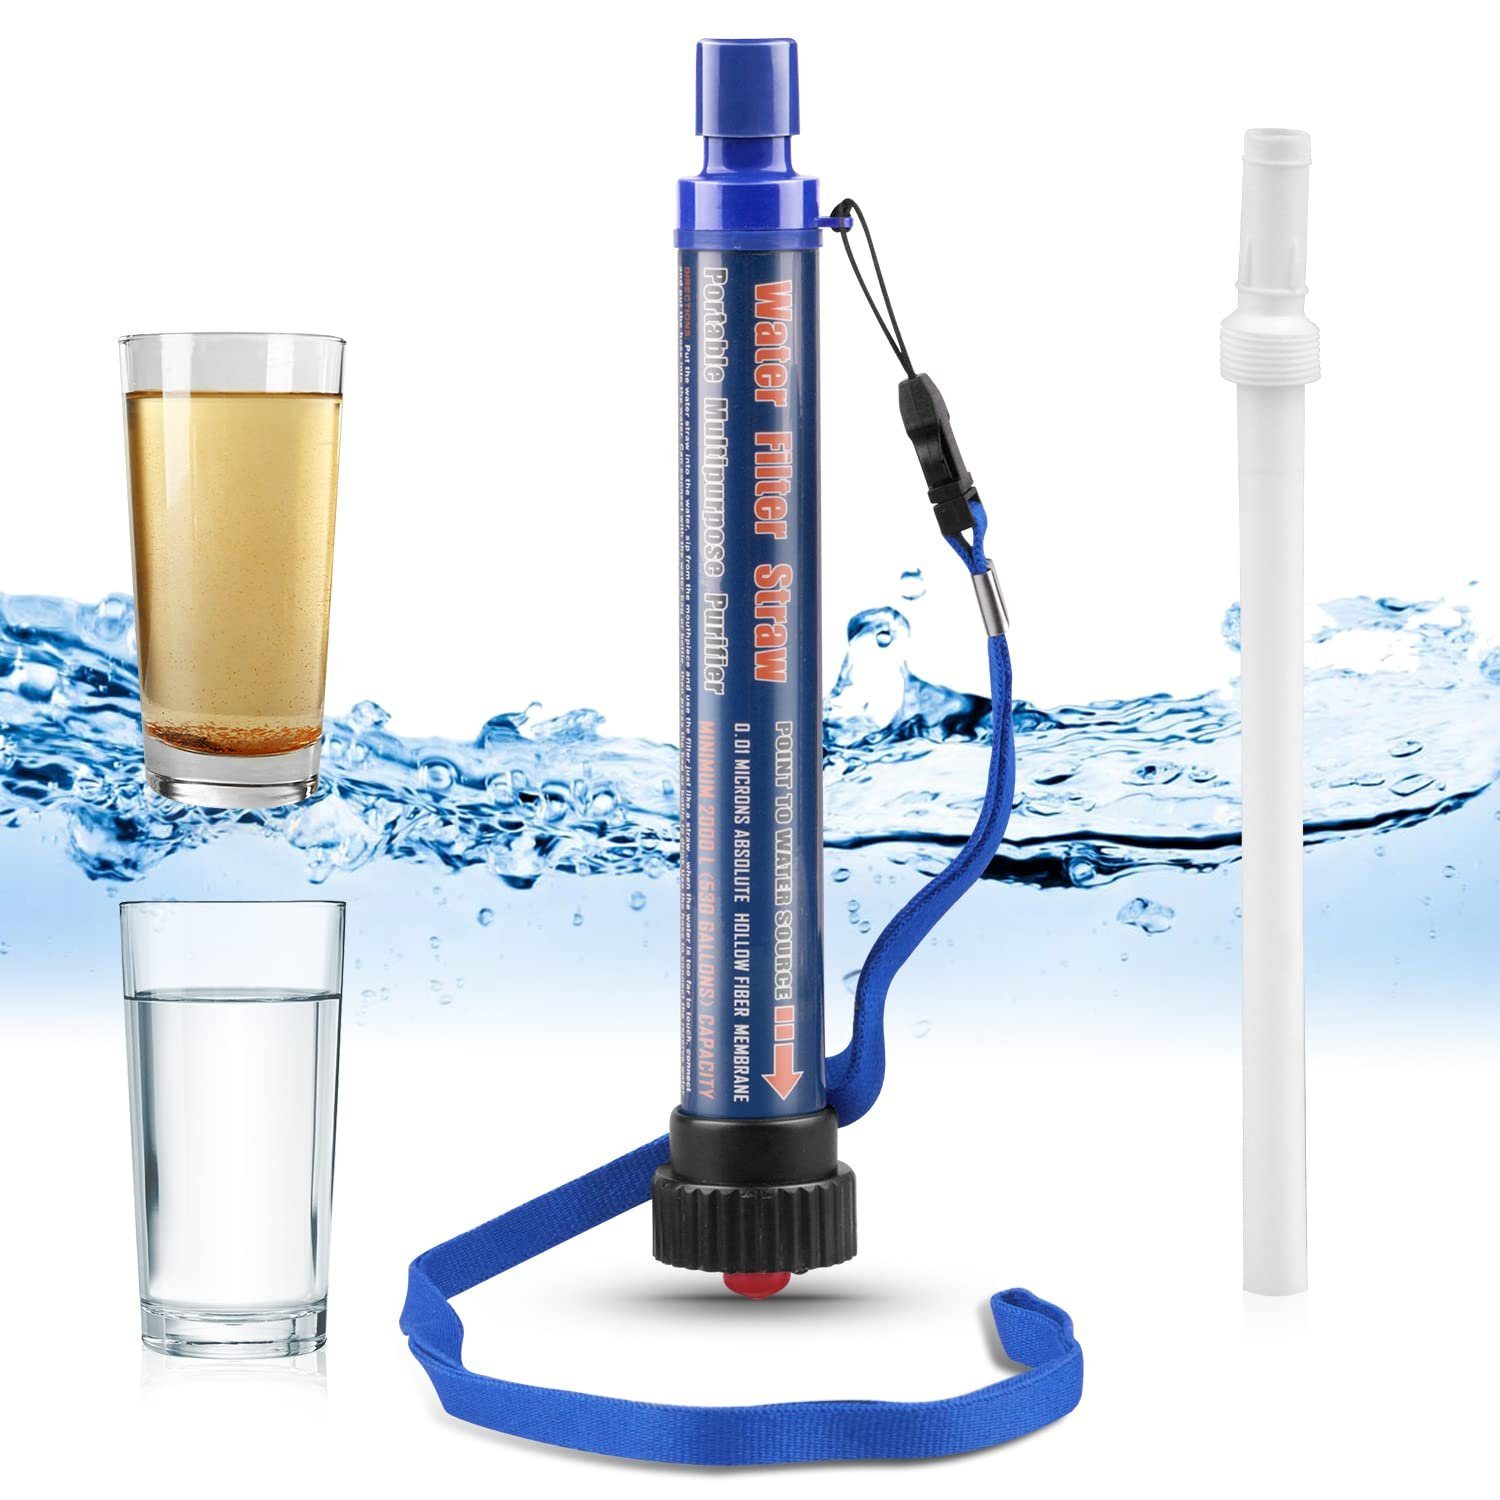 XDeer Wasserfilter Wasserfilter Outdoor,2000L Wasseraufbereiter,Survivalausrüstung, 99,99% aller Keime und Bakterien abtötet,geeignet für Camping Wandern Blau